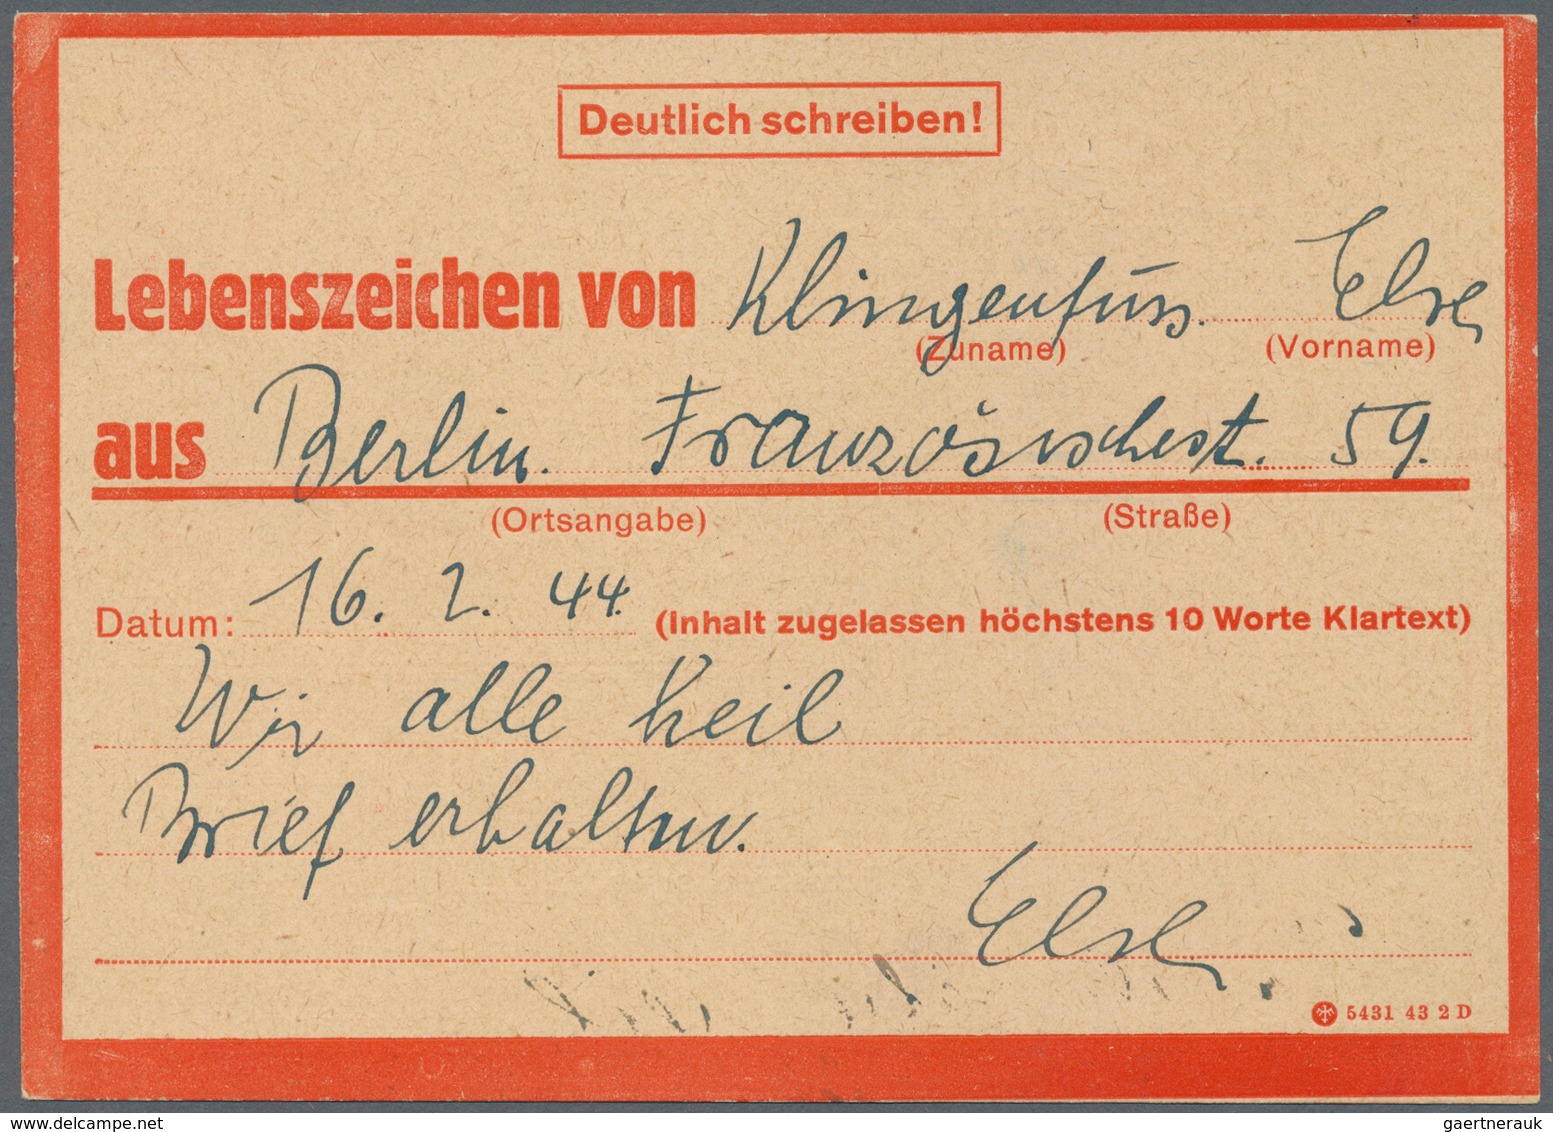 Deutsches Reich - Besonderheiten: 1933/1945, Belege und Dokumente abseits der reinen Markenfrankatur